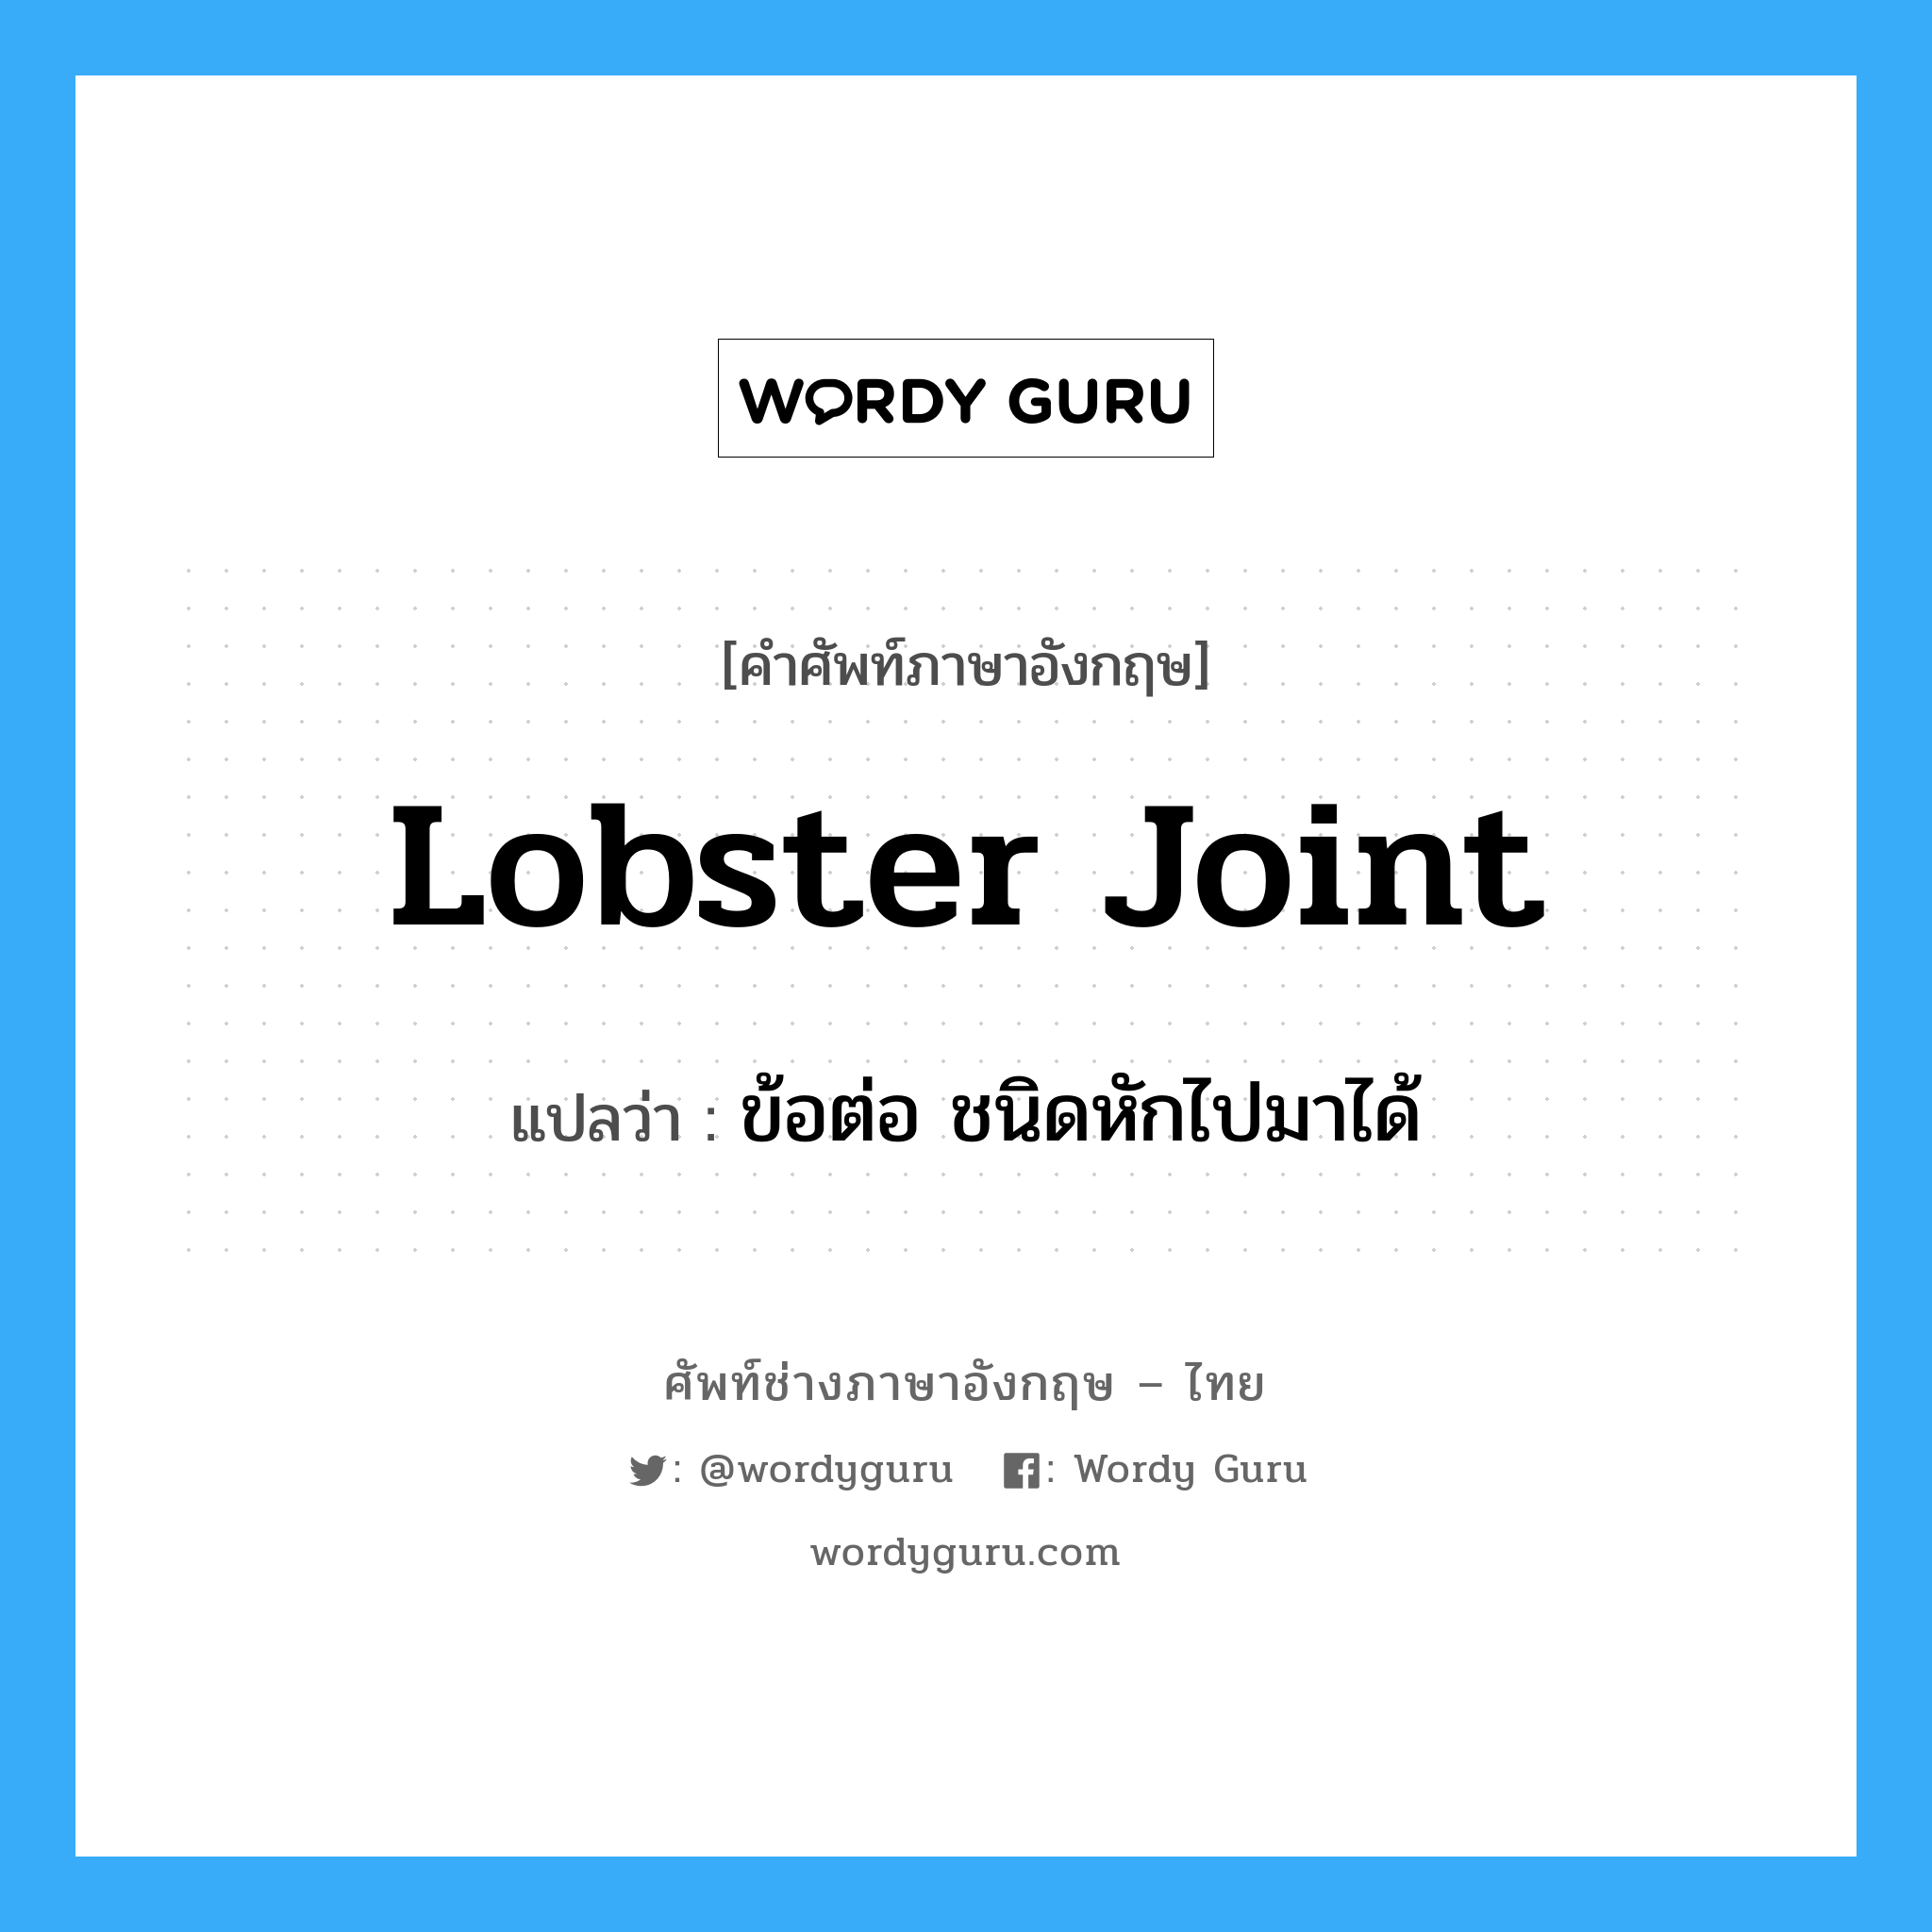 ข้อต่อ ชนิดหักไปมาได้ ภาษาอังกฤษ?, คำศัพท์ช่างภาษาอังกฤษ - ไทย ข้อต่อ ชนิดหักไปมาได้ คำศัพท์ภาษาอังกฤษ ข้อต่อ ชนิดหักไปมาได้ แปลว่า lobster joint